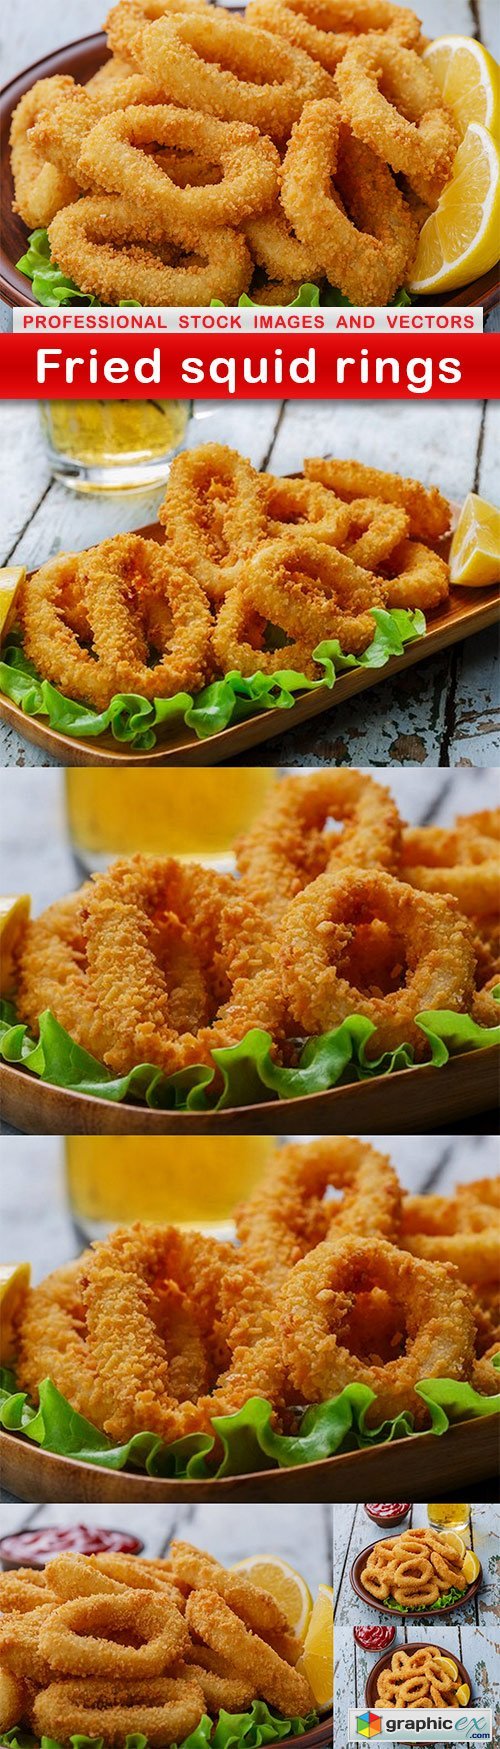 Fried squid rings - 7 UHQ JPEG